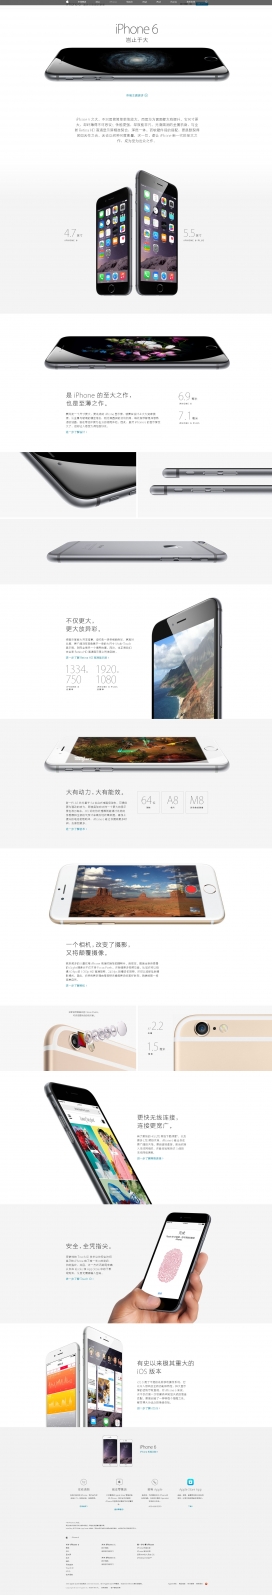 2014苹果iPhone6手机&iWatch腕表新品发布会HTML5酷站！非常简单大气，大展苹果设计风的设计。